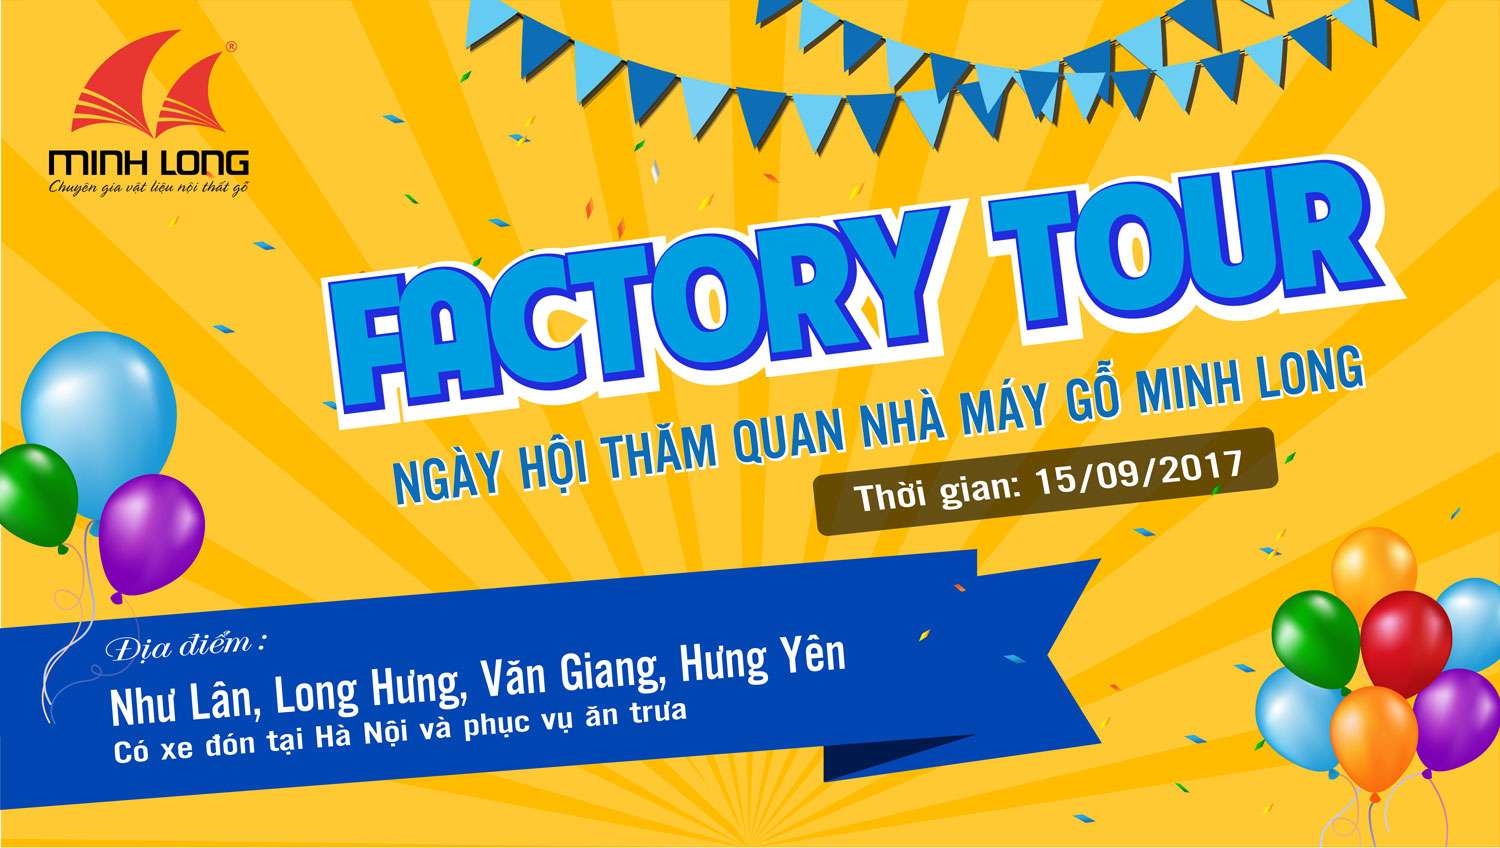 Facetory tour - Minh Long